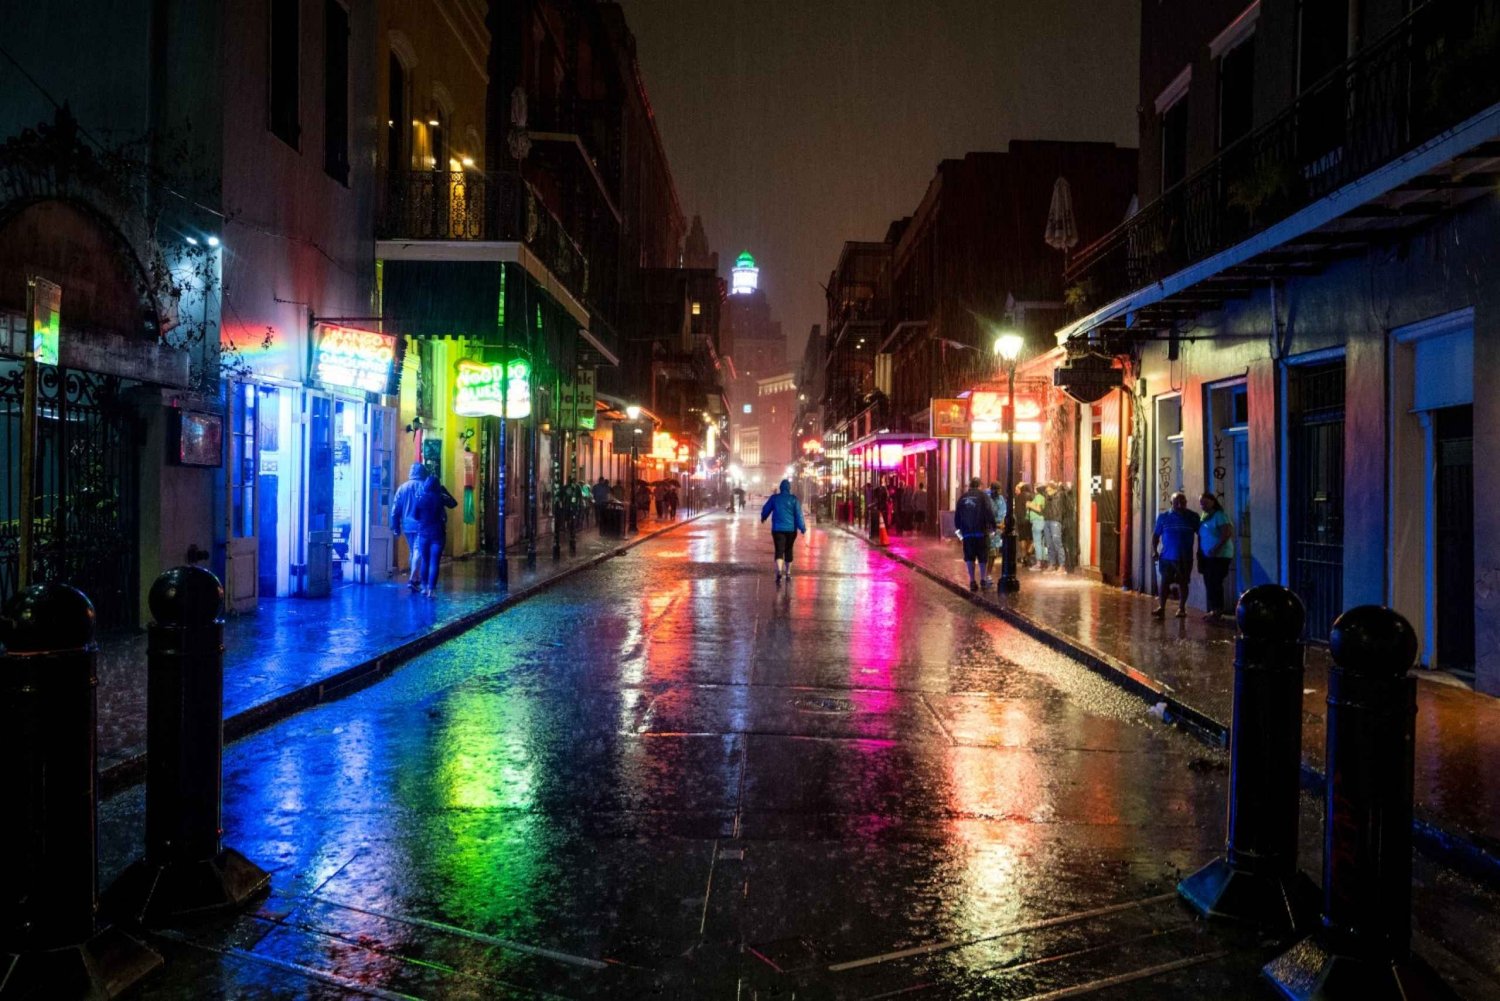 Excursão fantasma de áudio autoguiada em Nova Orleans em 6 idiomas